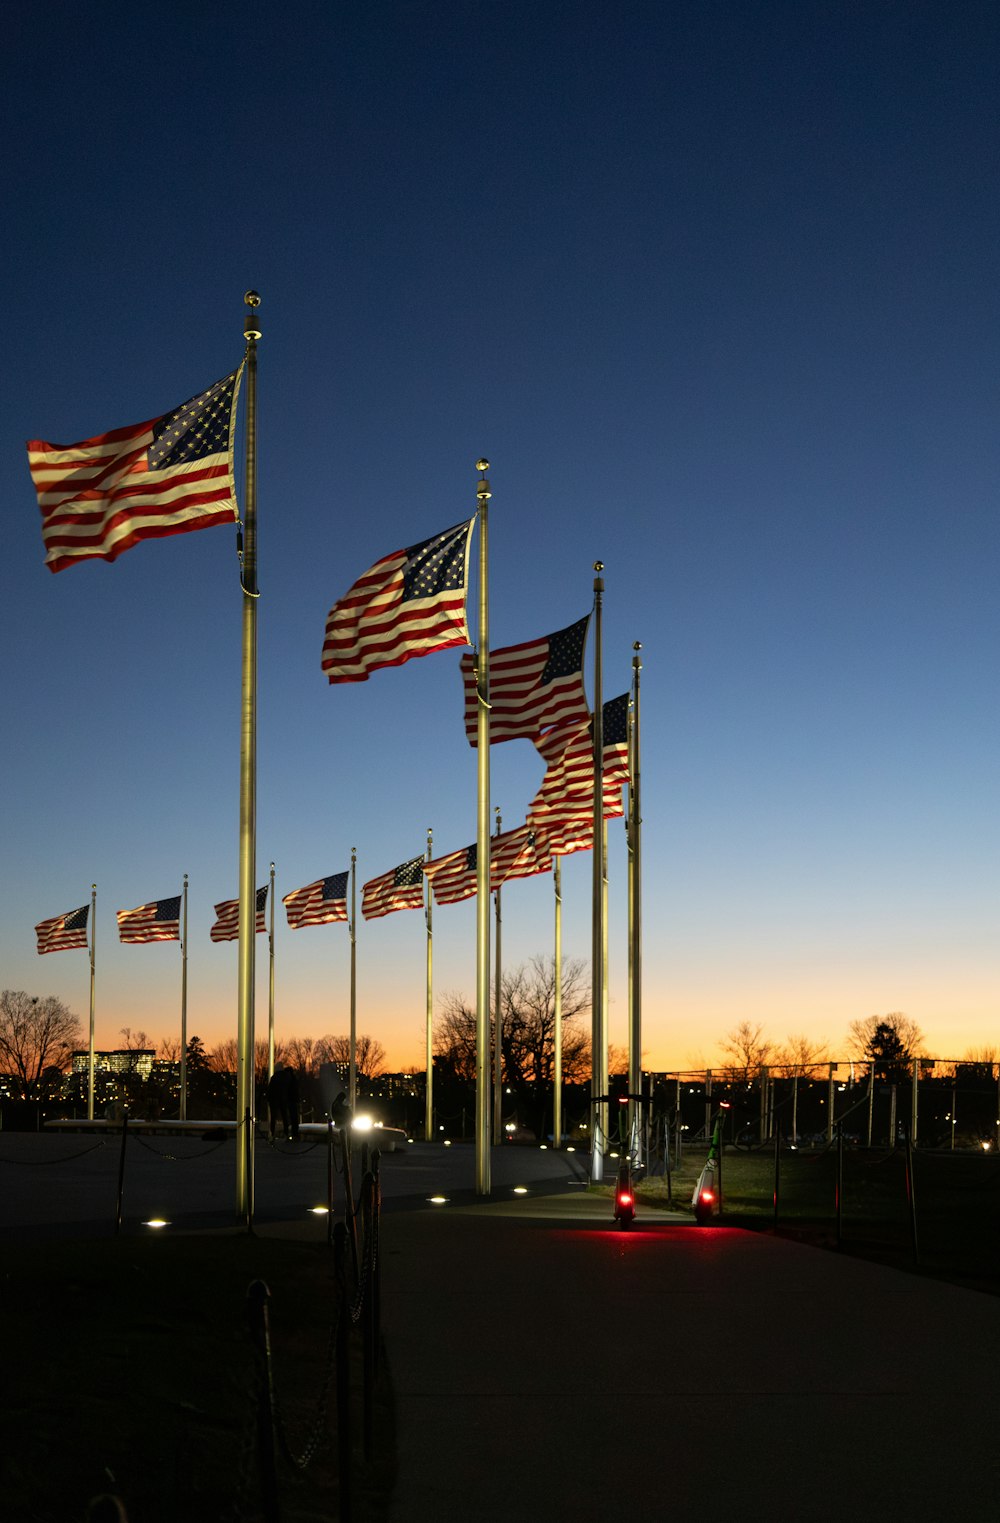 Una hilera de banderas americanas ondeando al viento